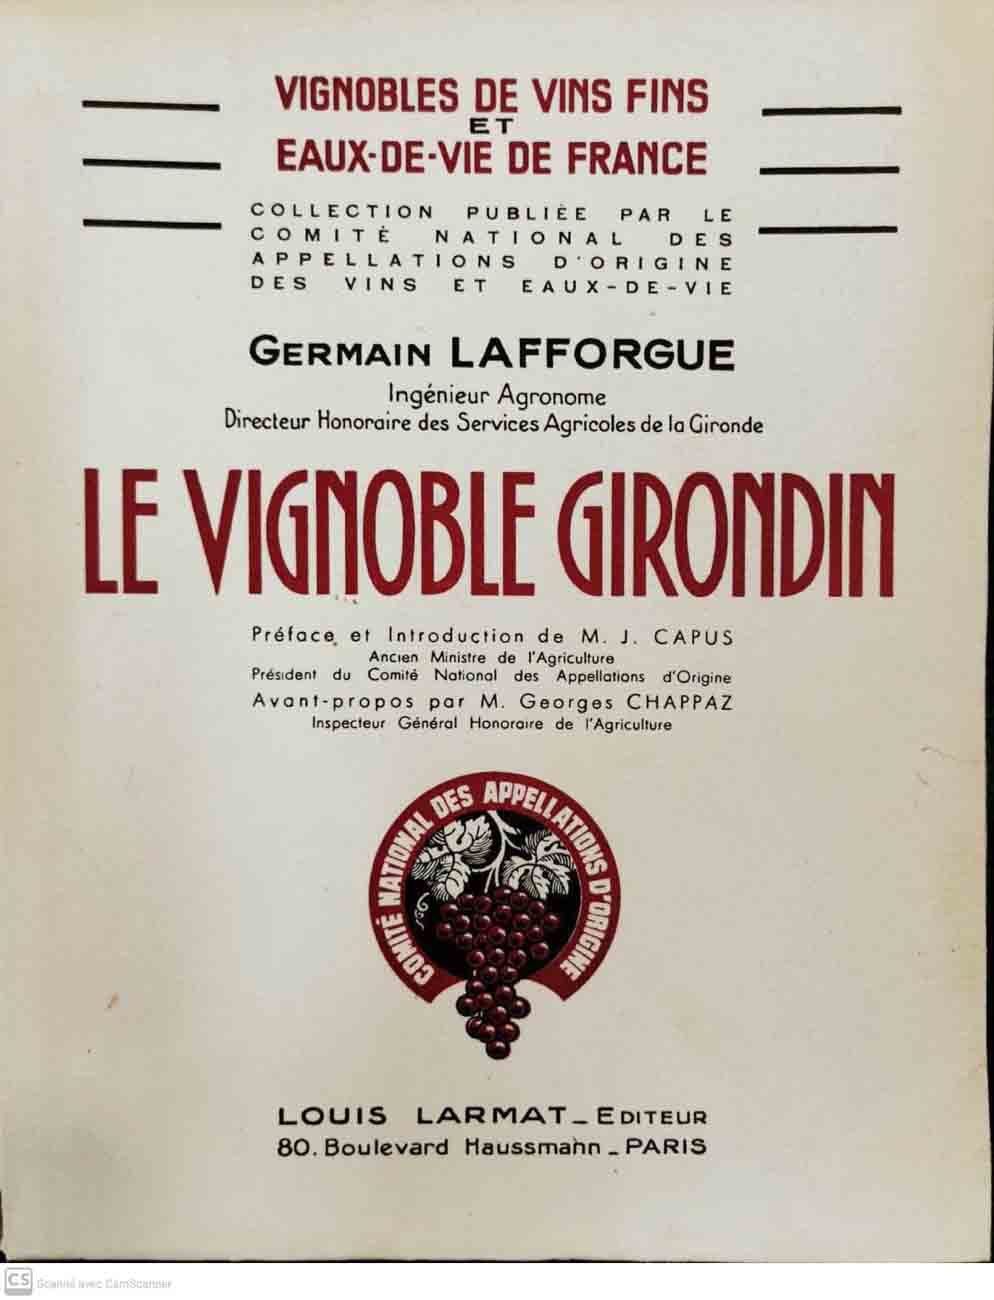 LAFFORGUE, Germain: - Le vignoble Girondin. Prf. et introd. de M.J. Capus. Avant-propos par G. Chappaz. 'Vignobles de vins fins & eaux-de-vie de France', 1.